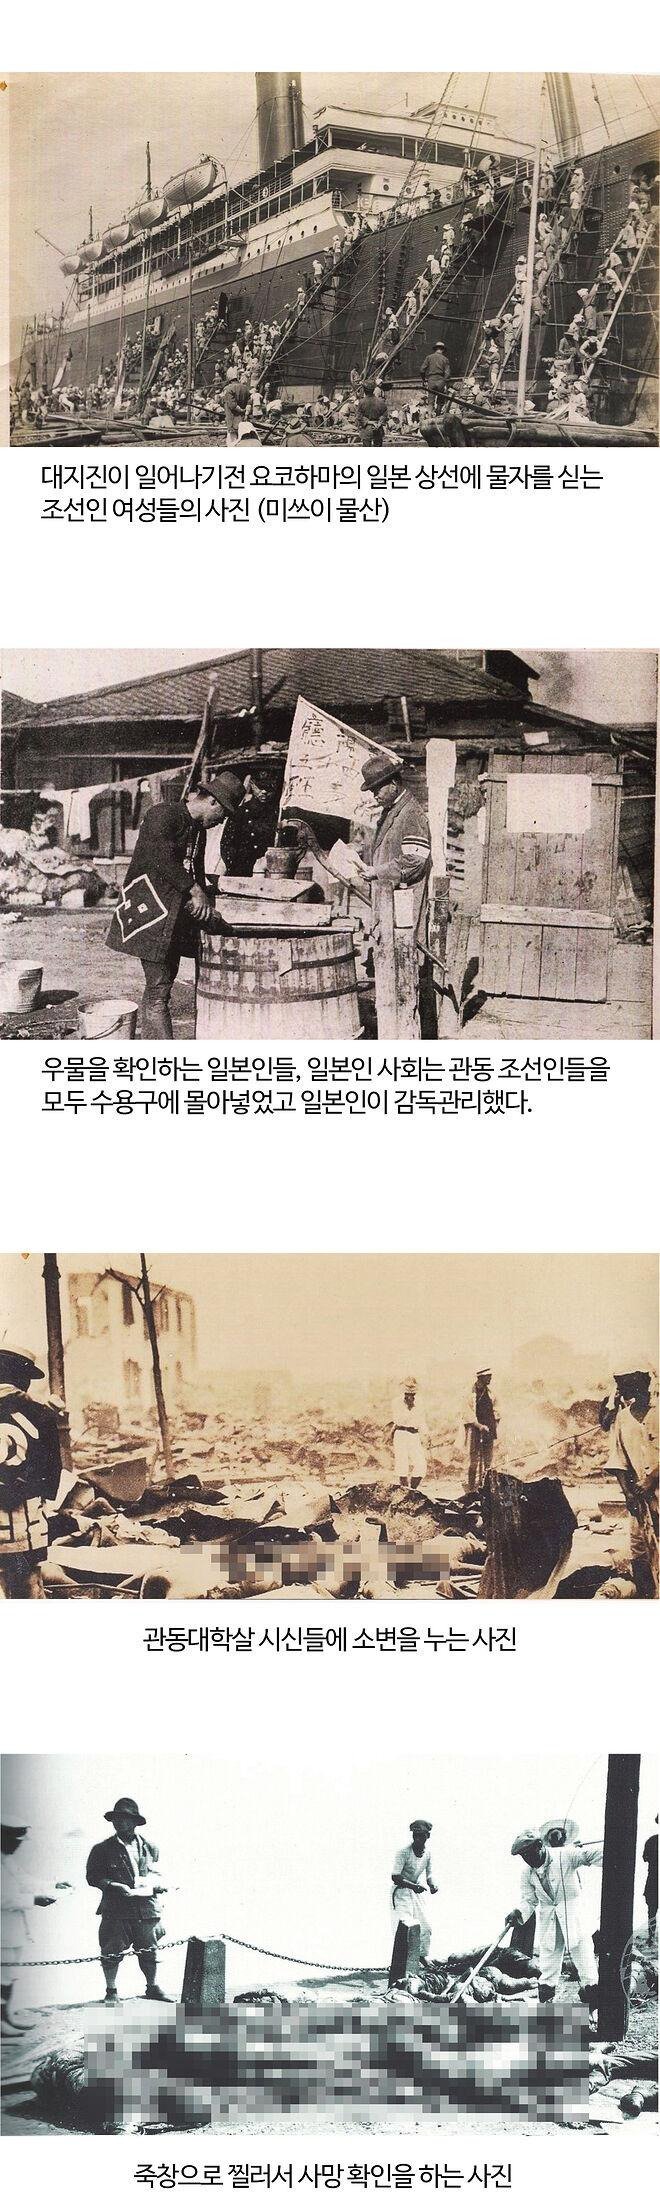 일본 학살 증거사진 공개